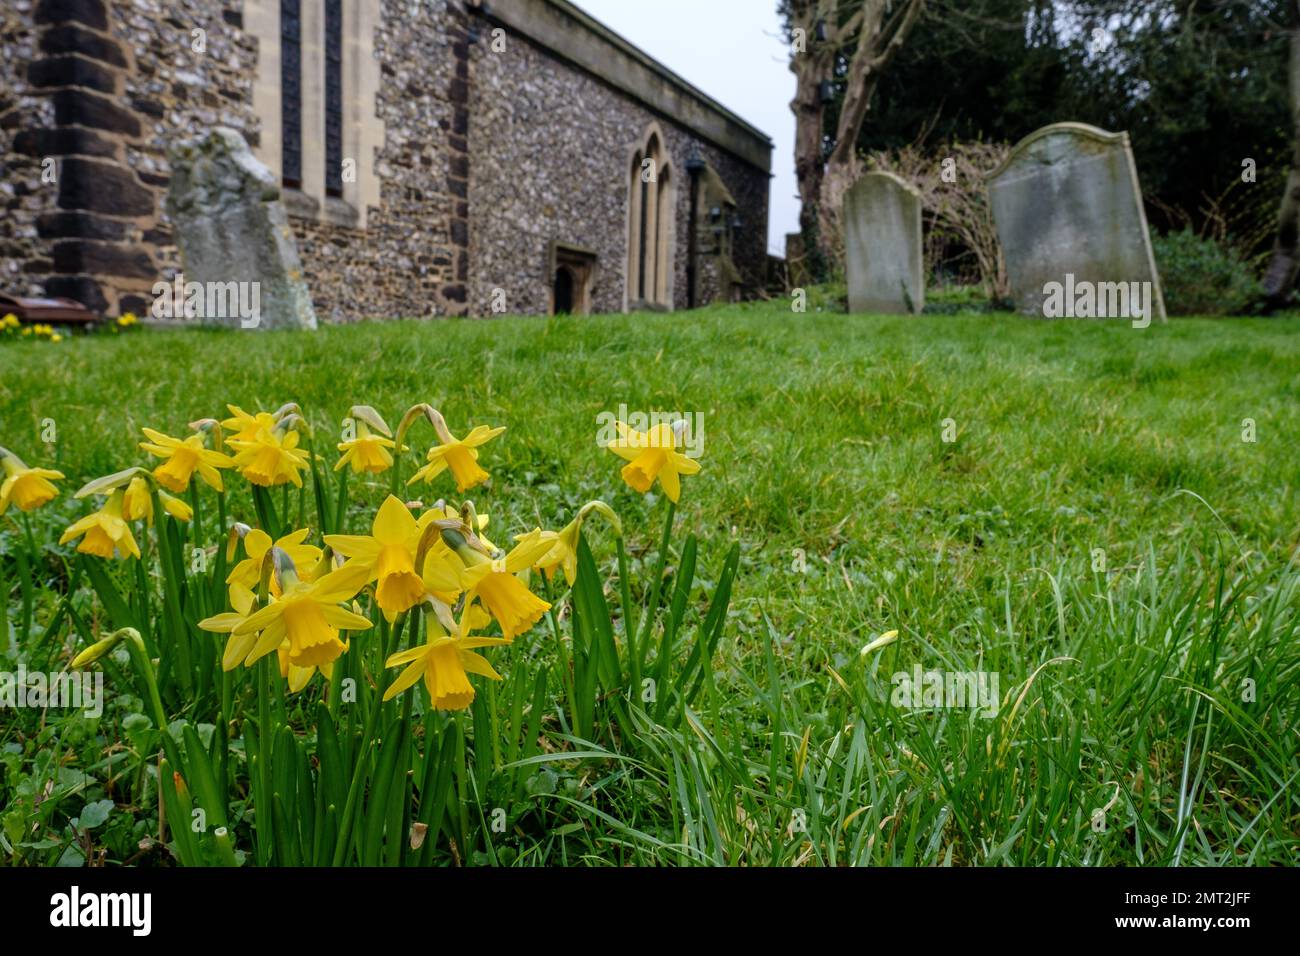 Primer plano de narcisos en la hierba en un cementerio con tumbas y parte del edificio de la iglesia en el fondo. Foto de stock